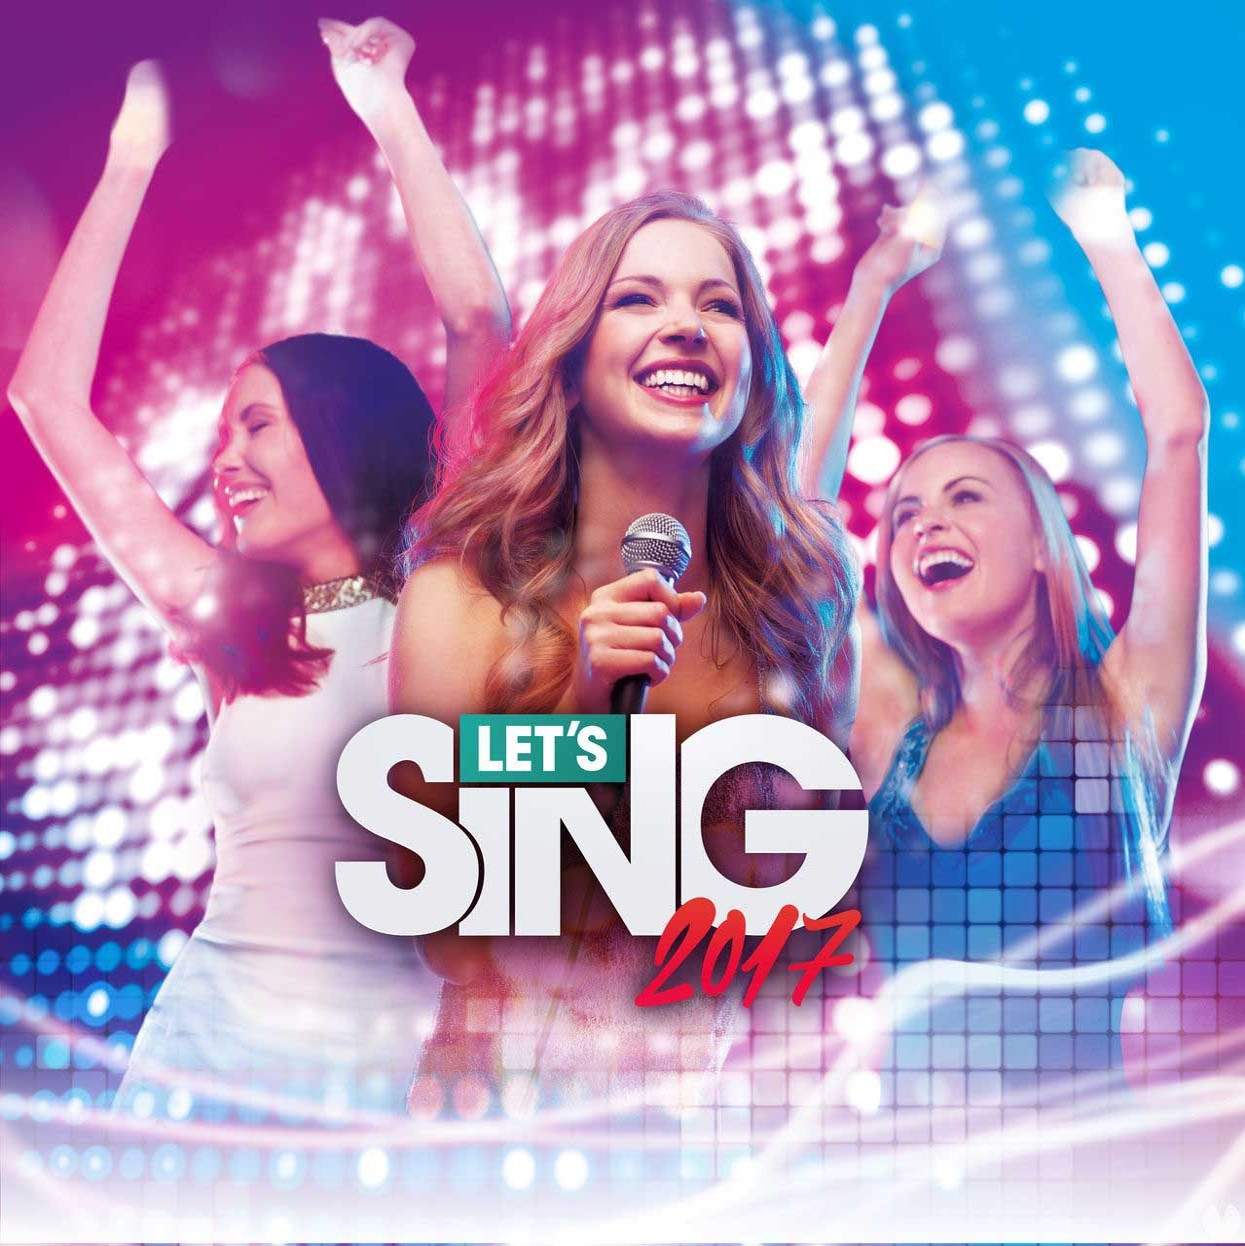 Let's Sing 2017 is er met een derde uitbreiding!